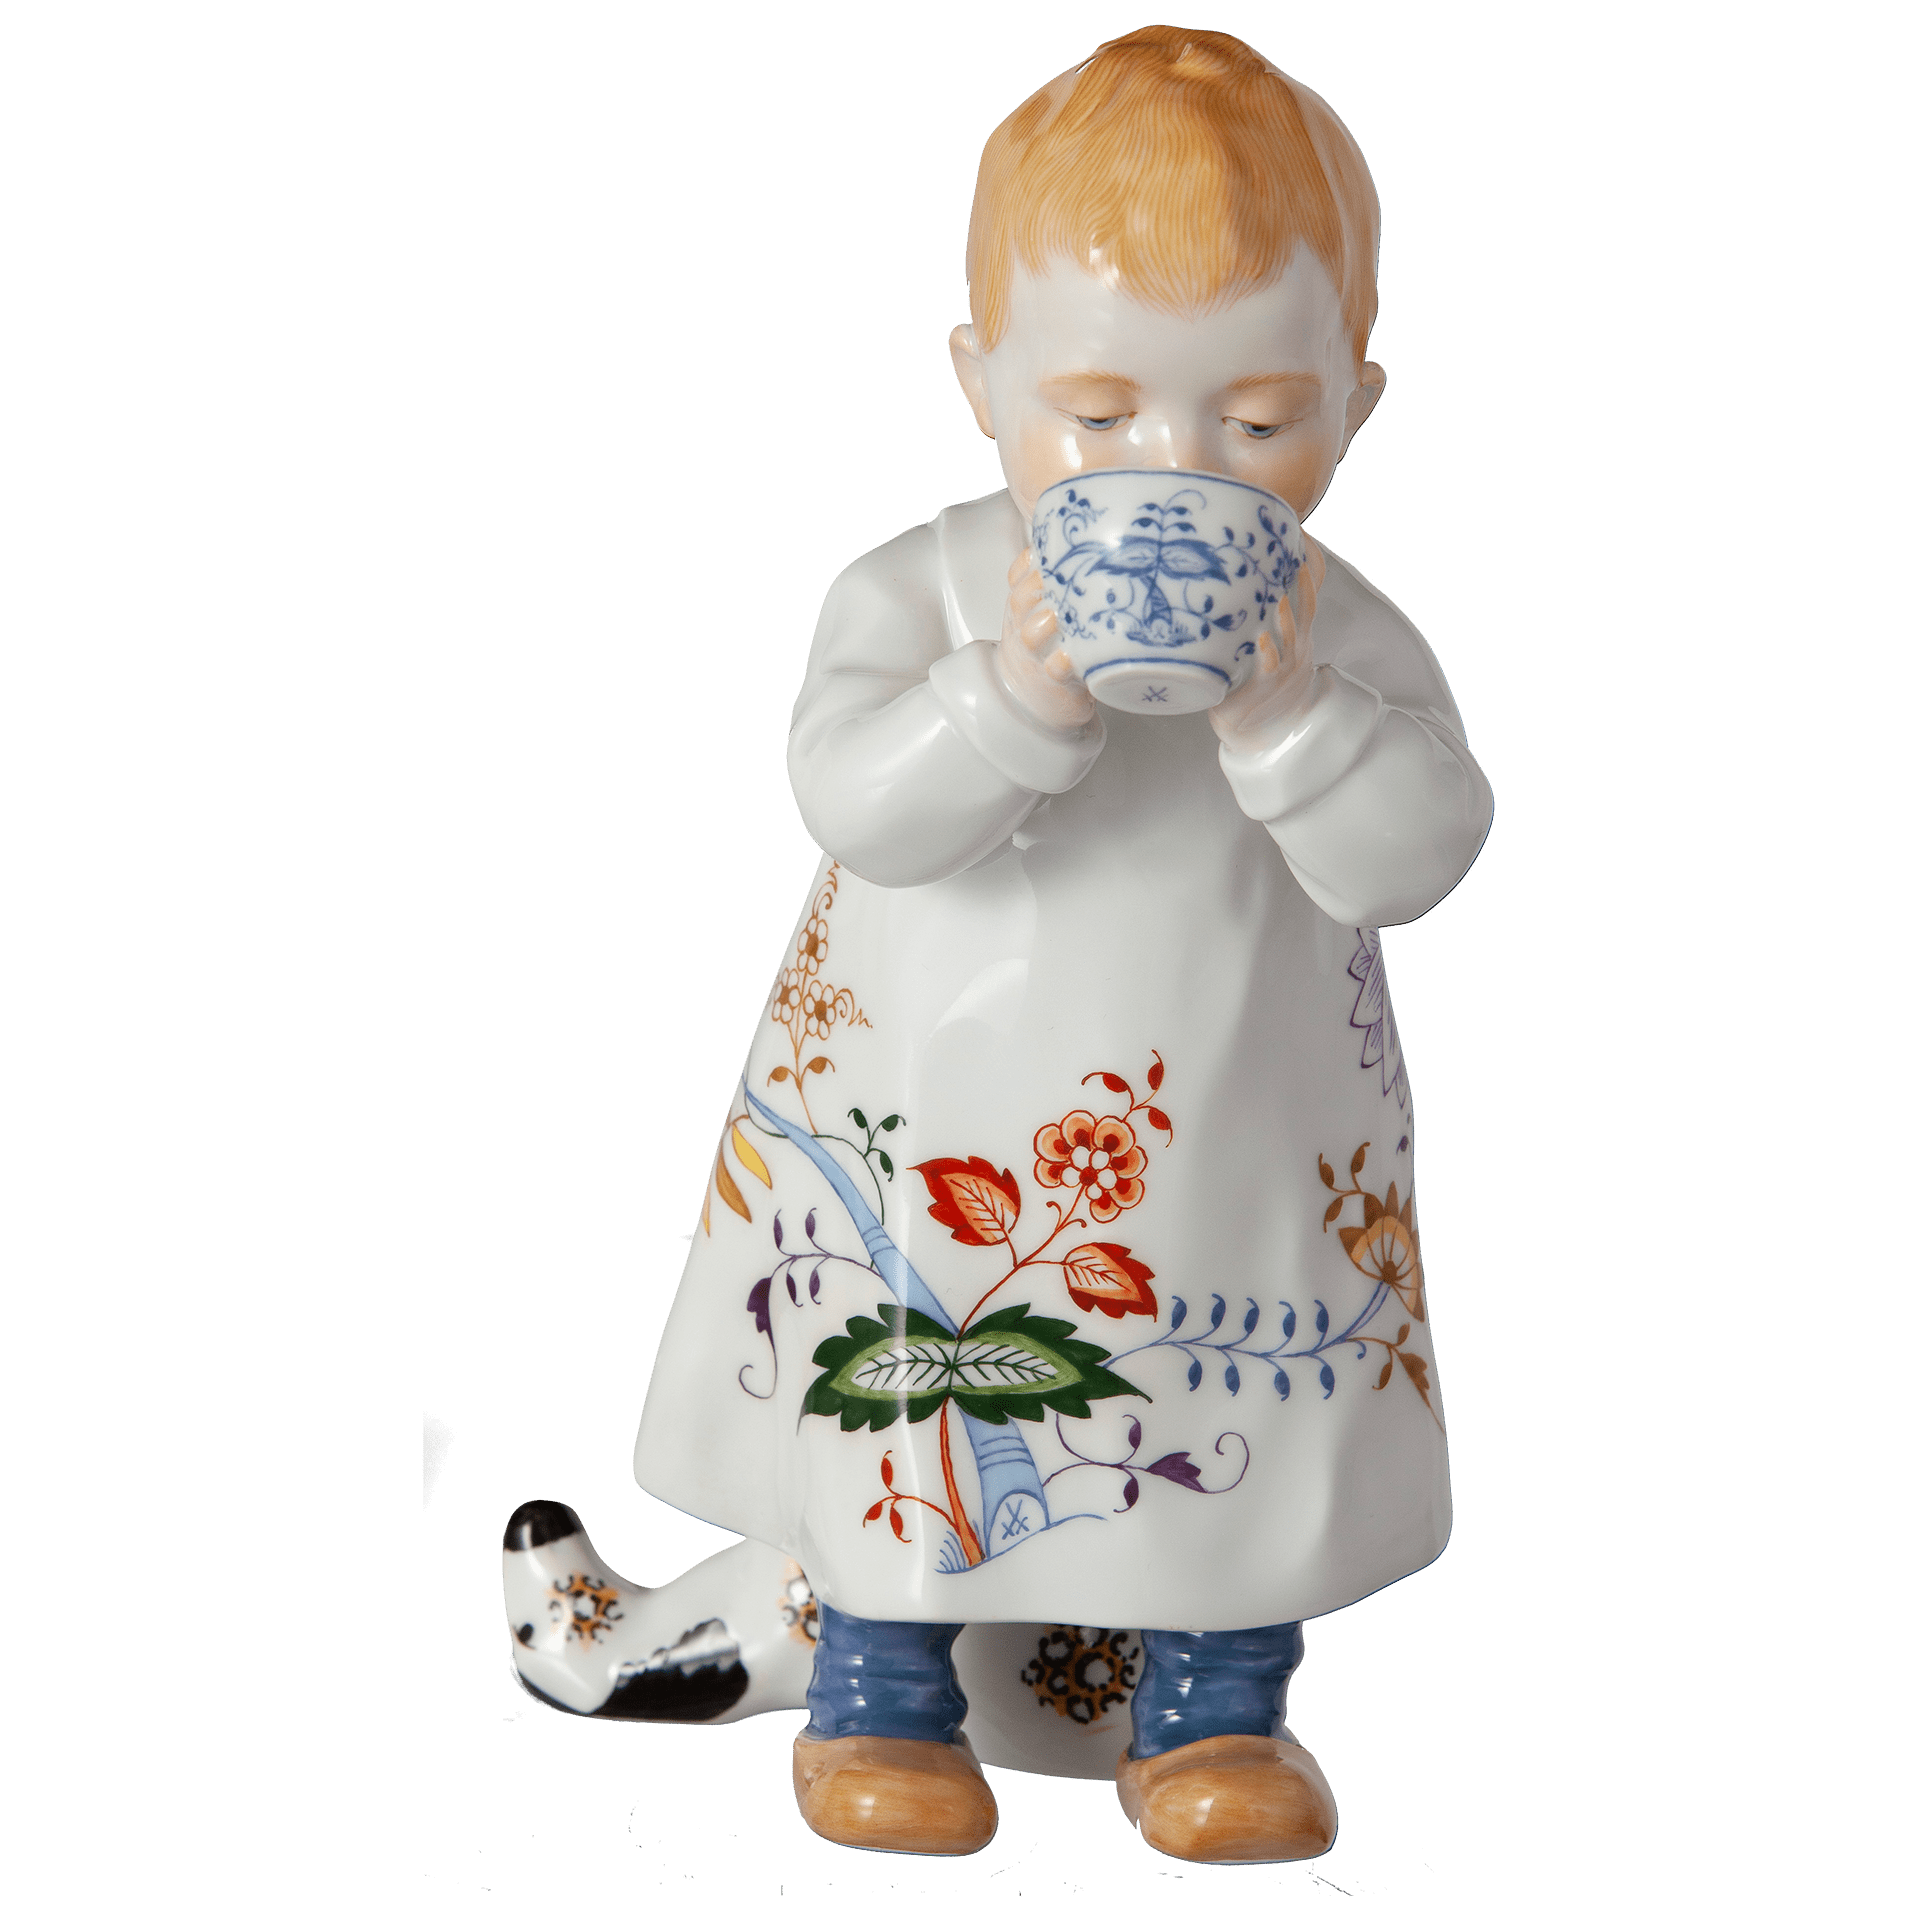 ドイツの名窯マイセン 日本公式サイト|人形「ミルクを飲む子供